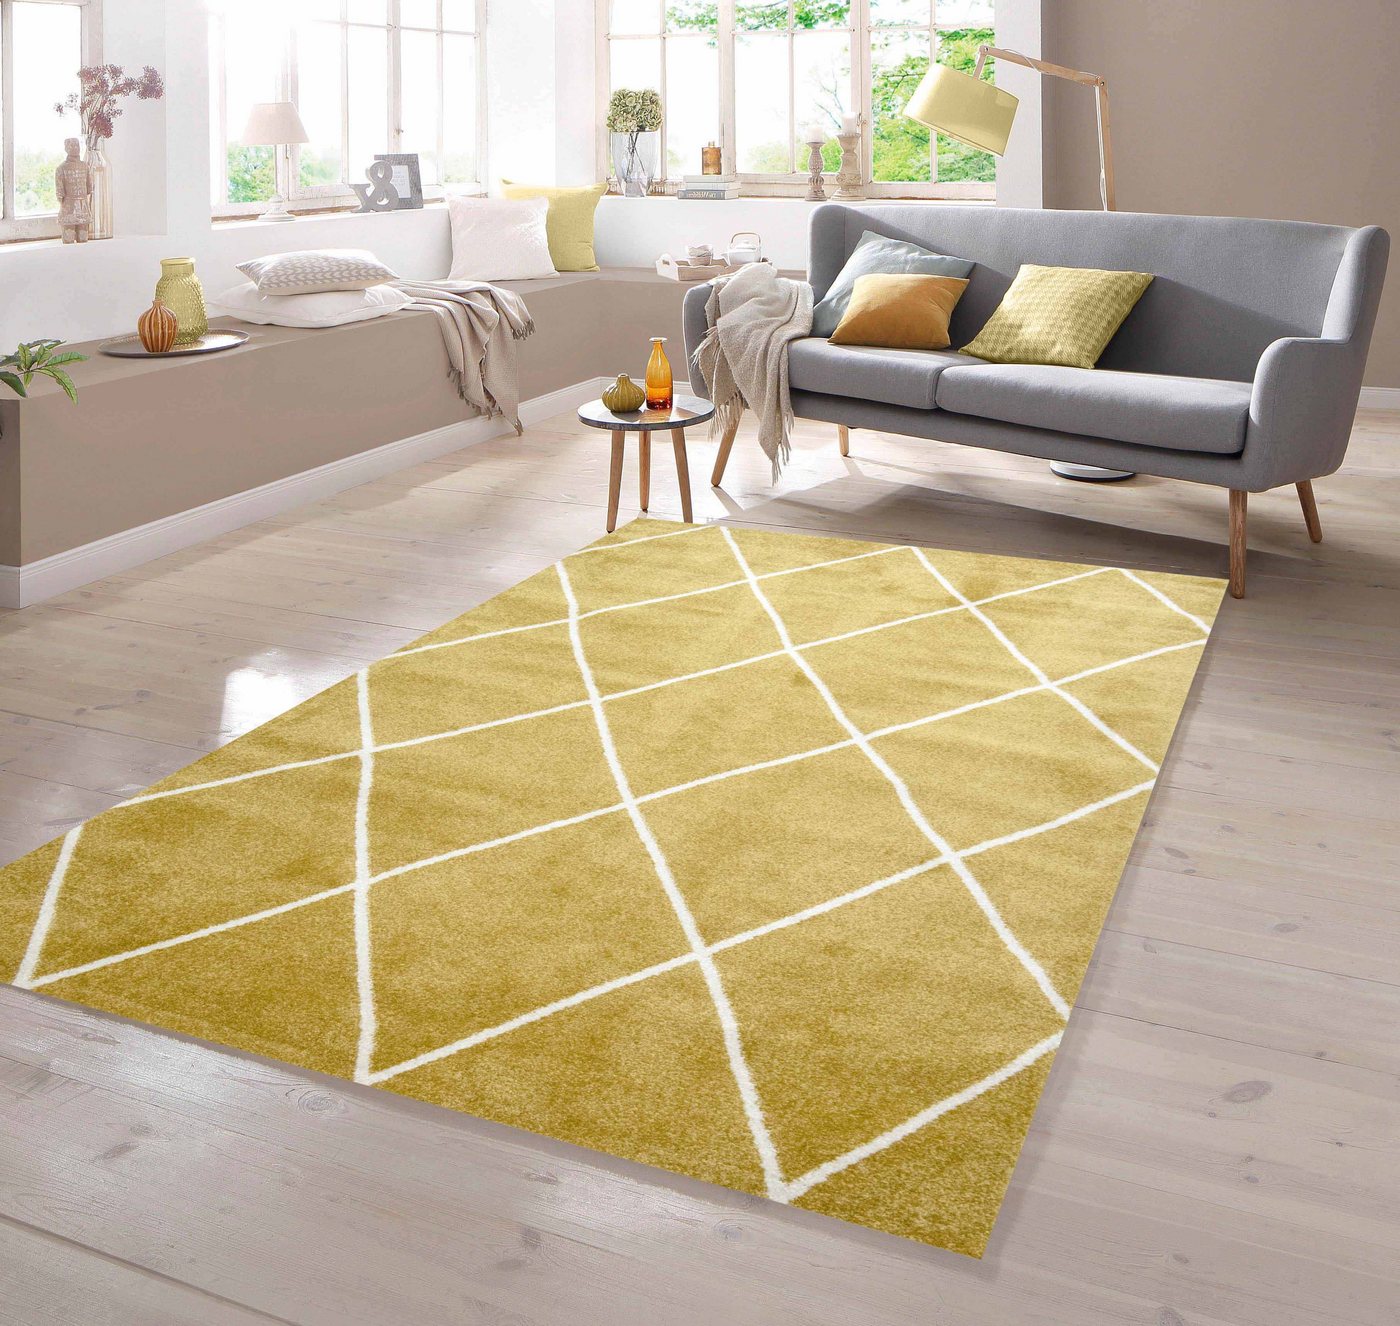 Teppich Teppich Skandinavischer Stil Rautenmuster gold creme weiß, TeppichHome24, rechteckig von TeppichHome24